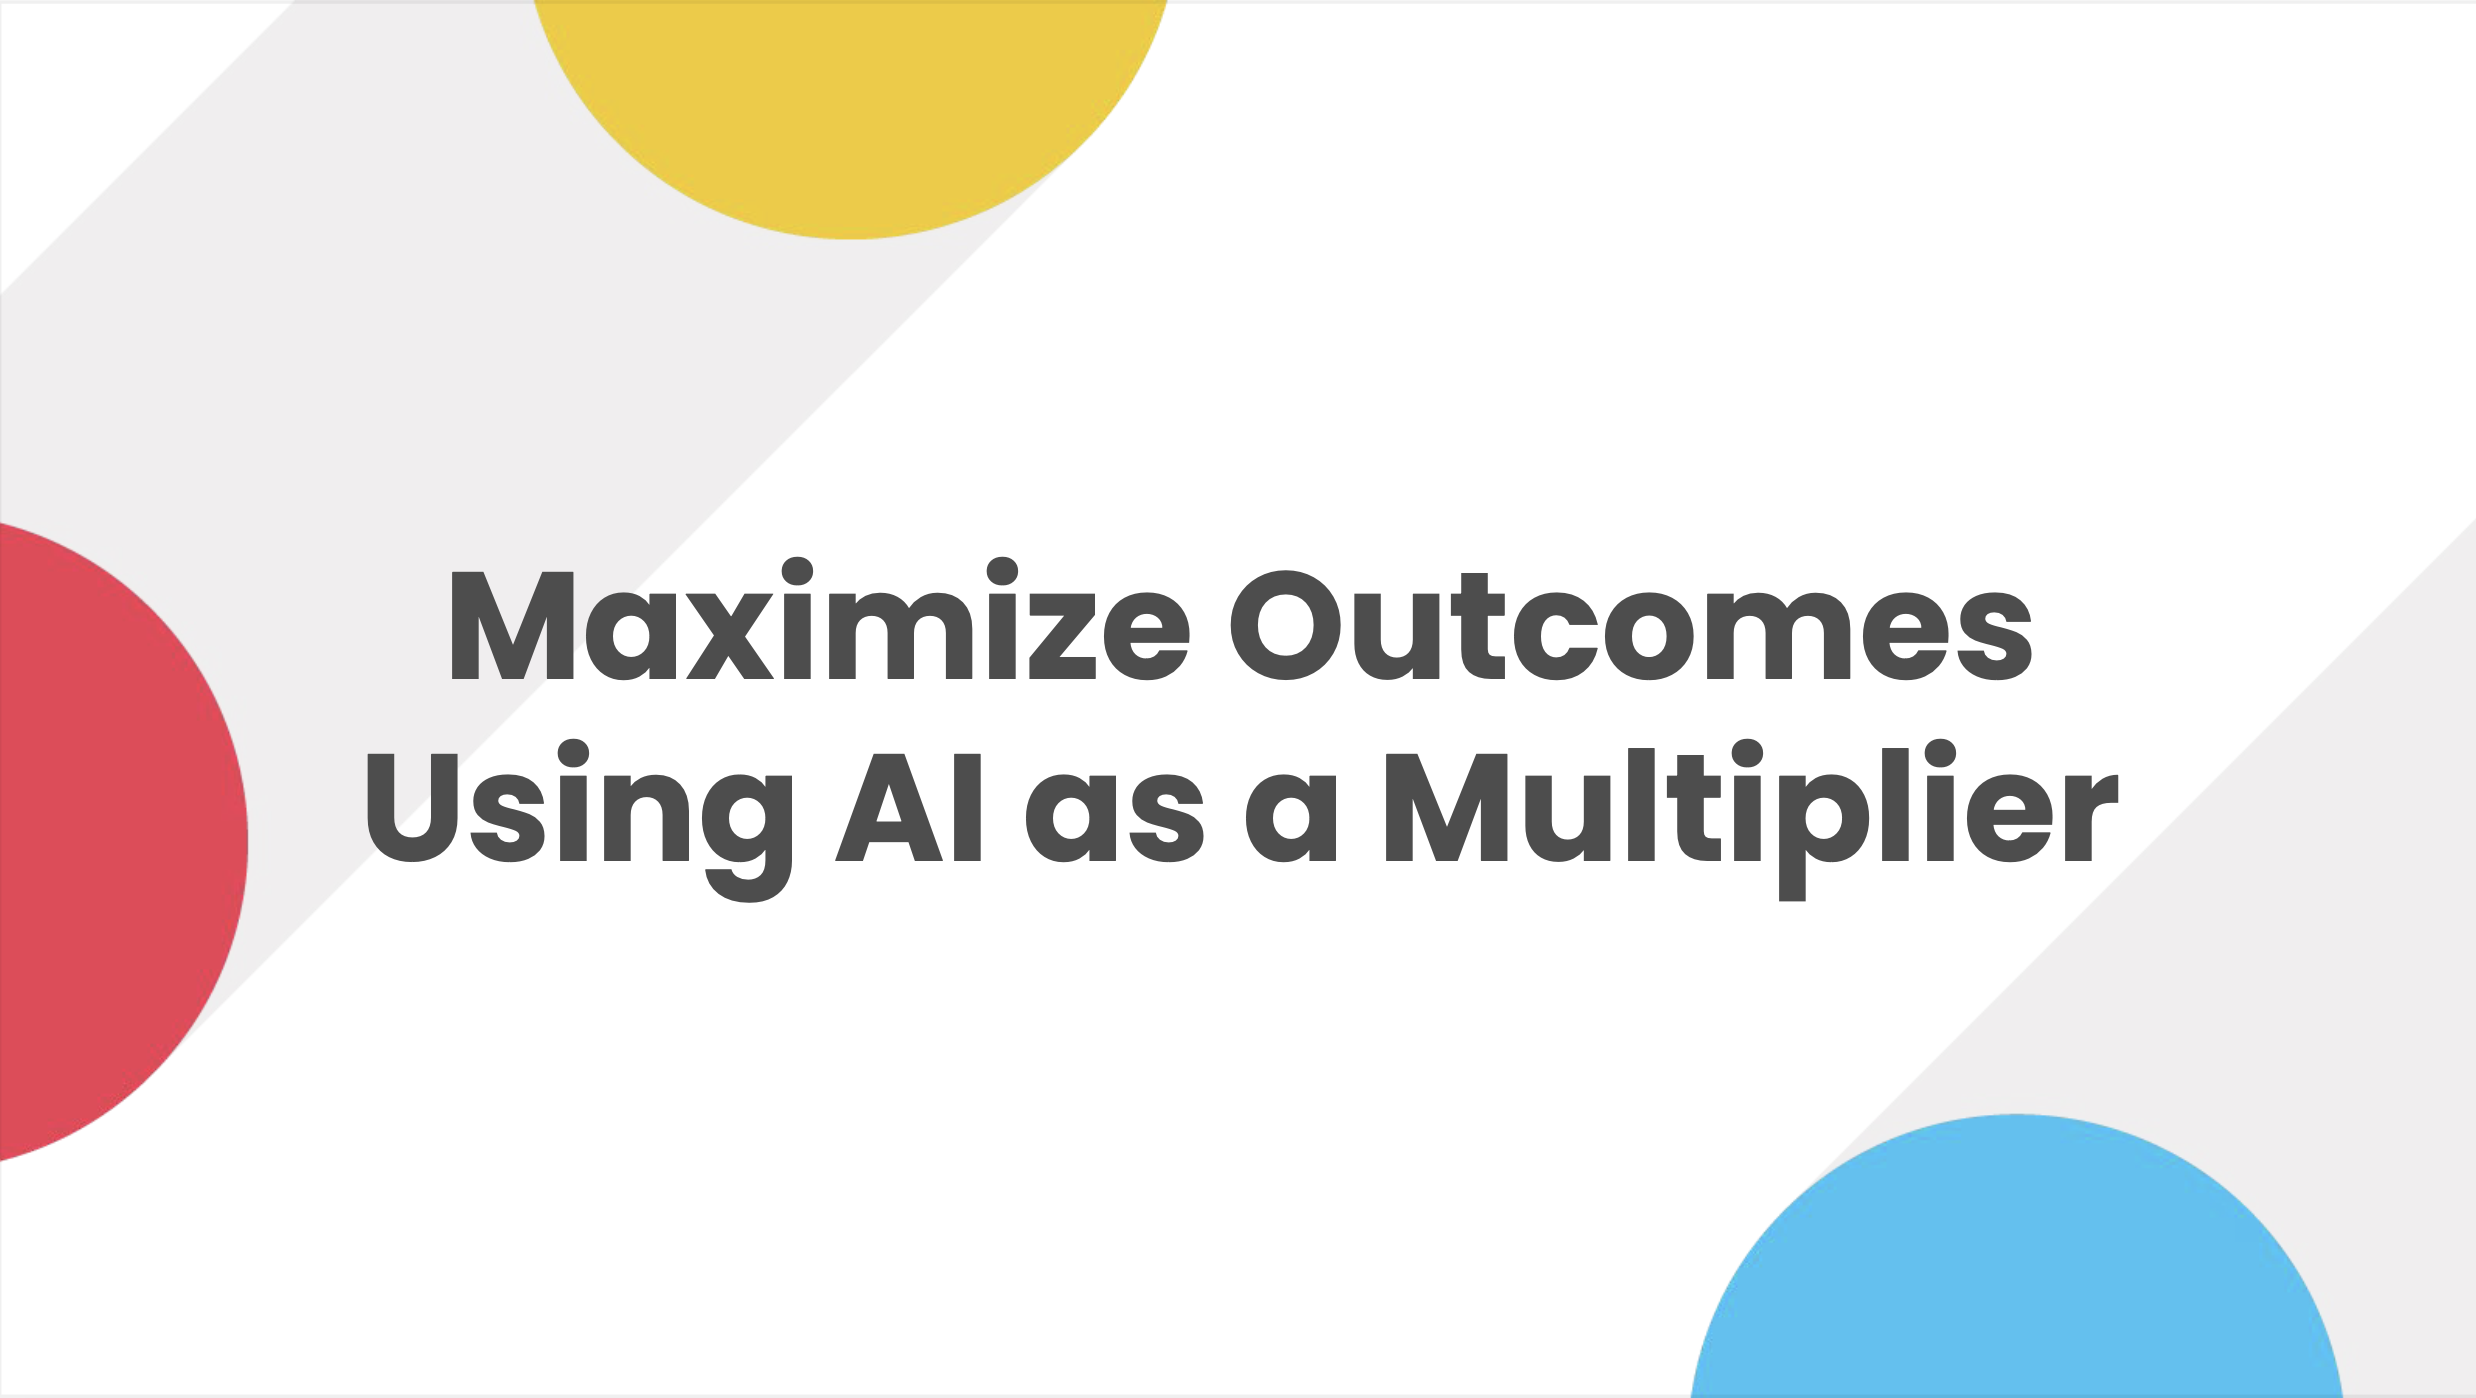 Maximize Outcomes Using AI as a Multiplier